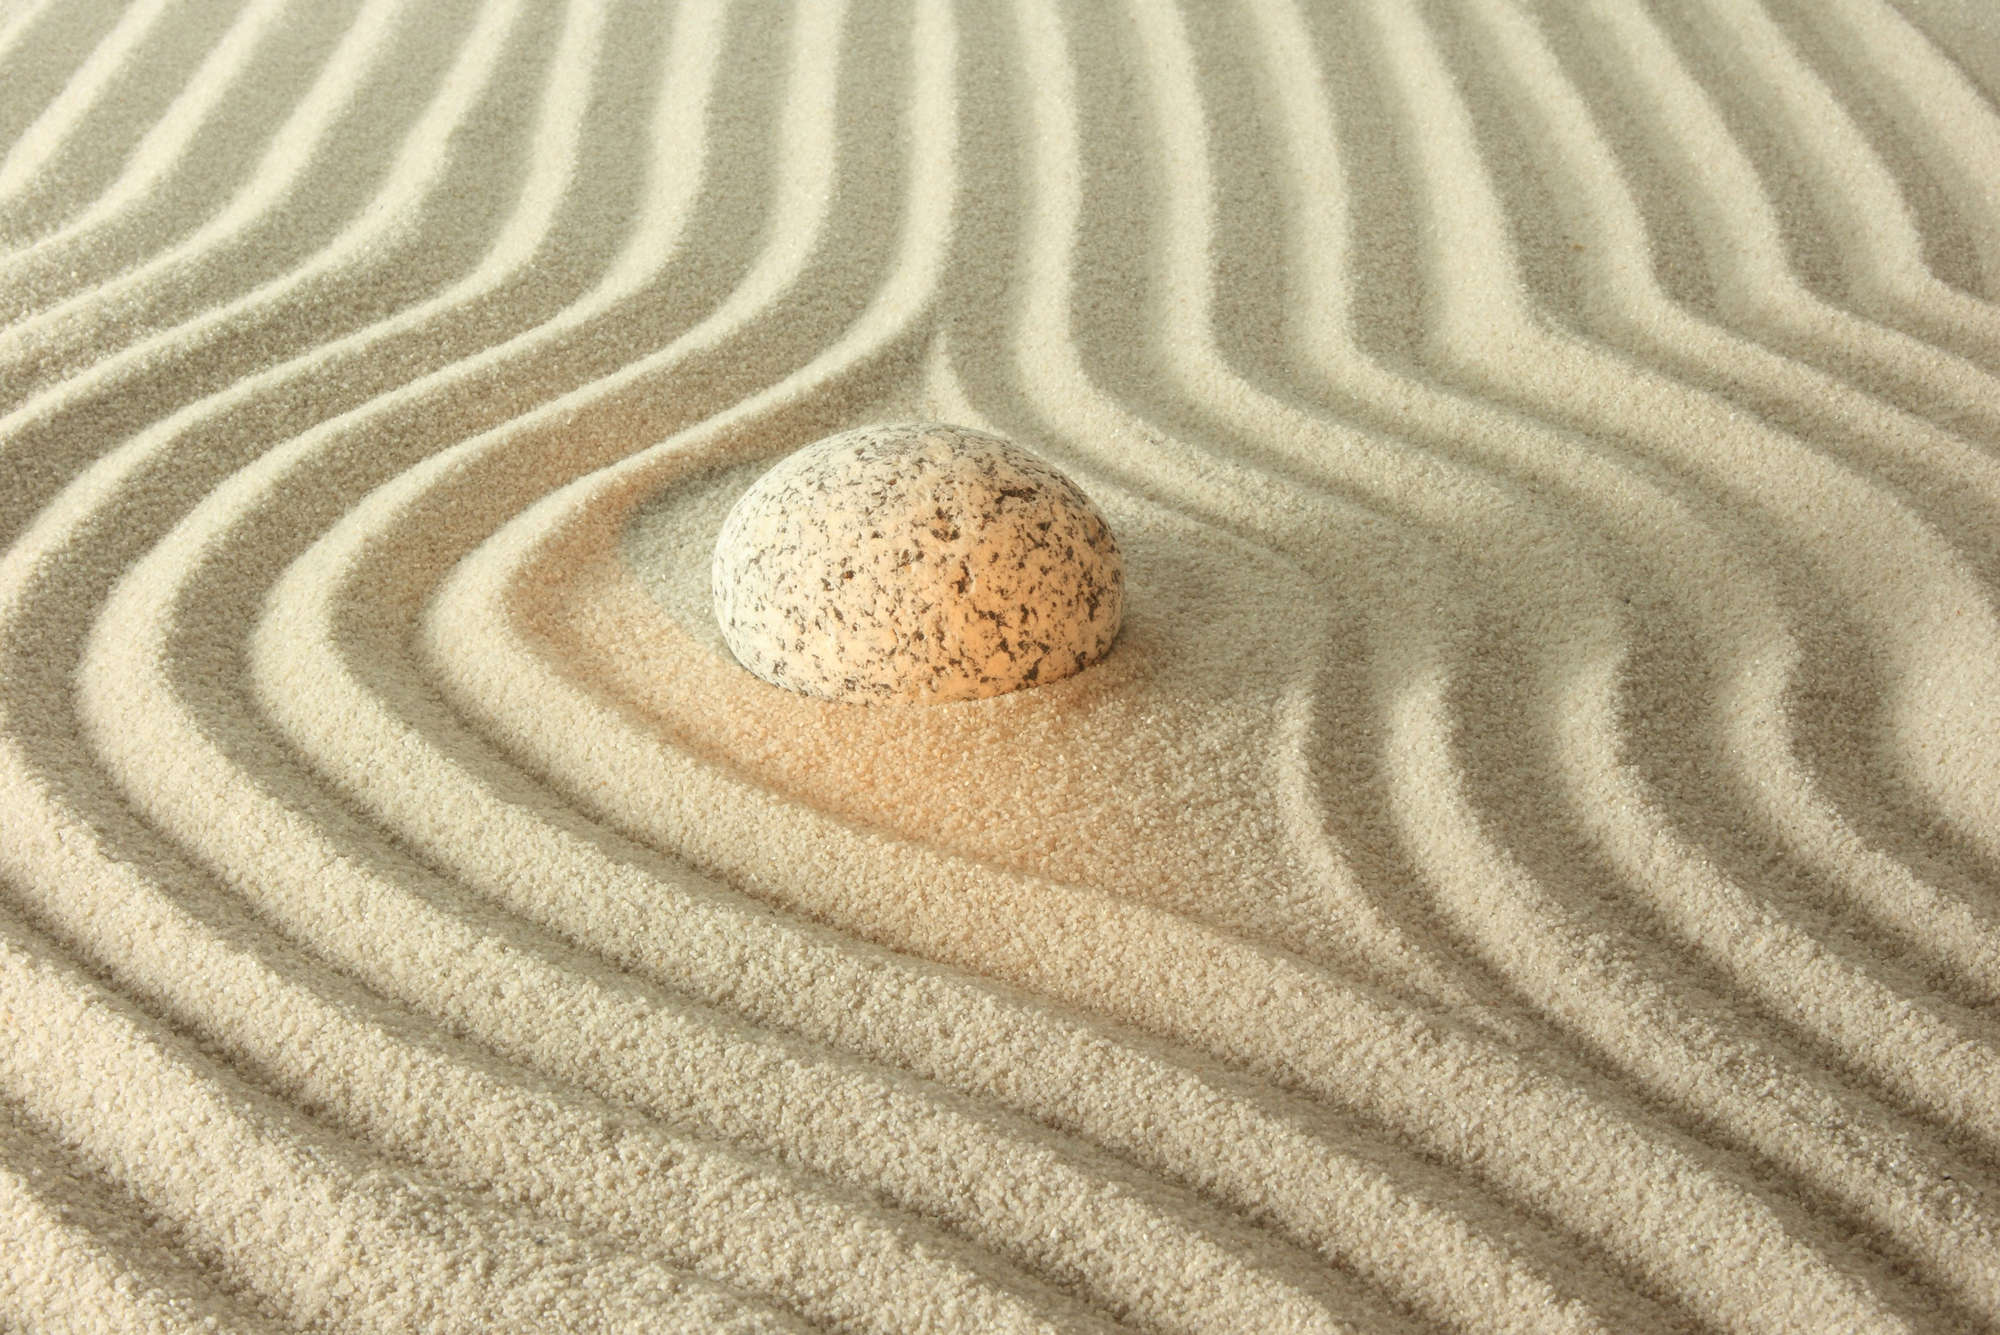             Fototapete leuchtender Stein im Sand – Mattes Glattvlies
        